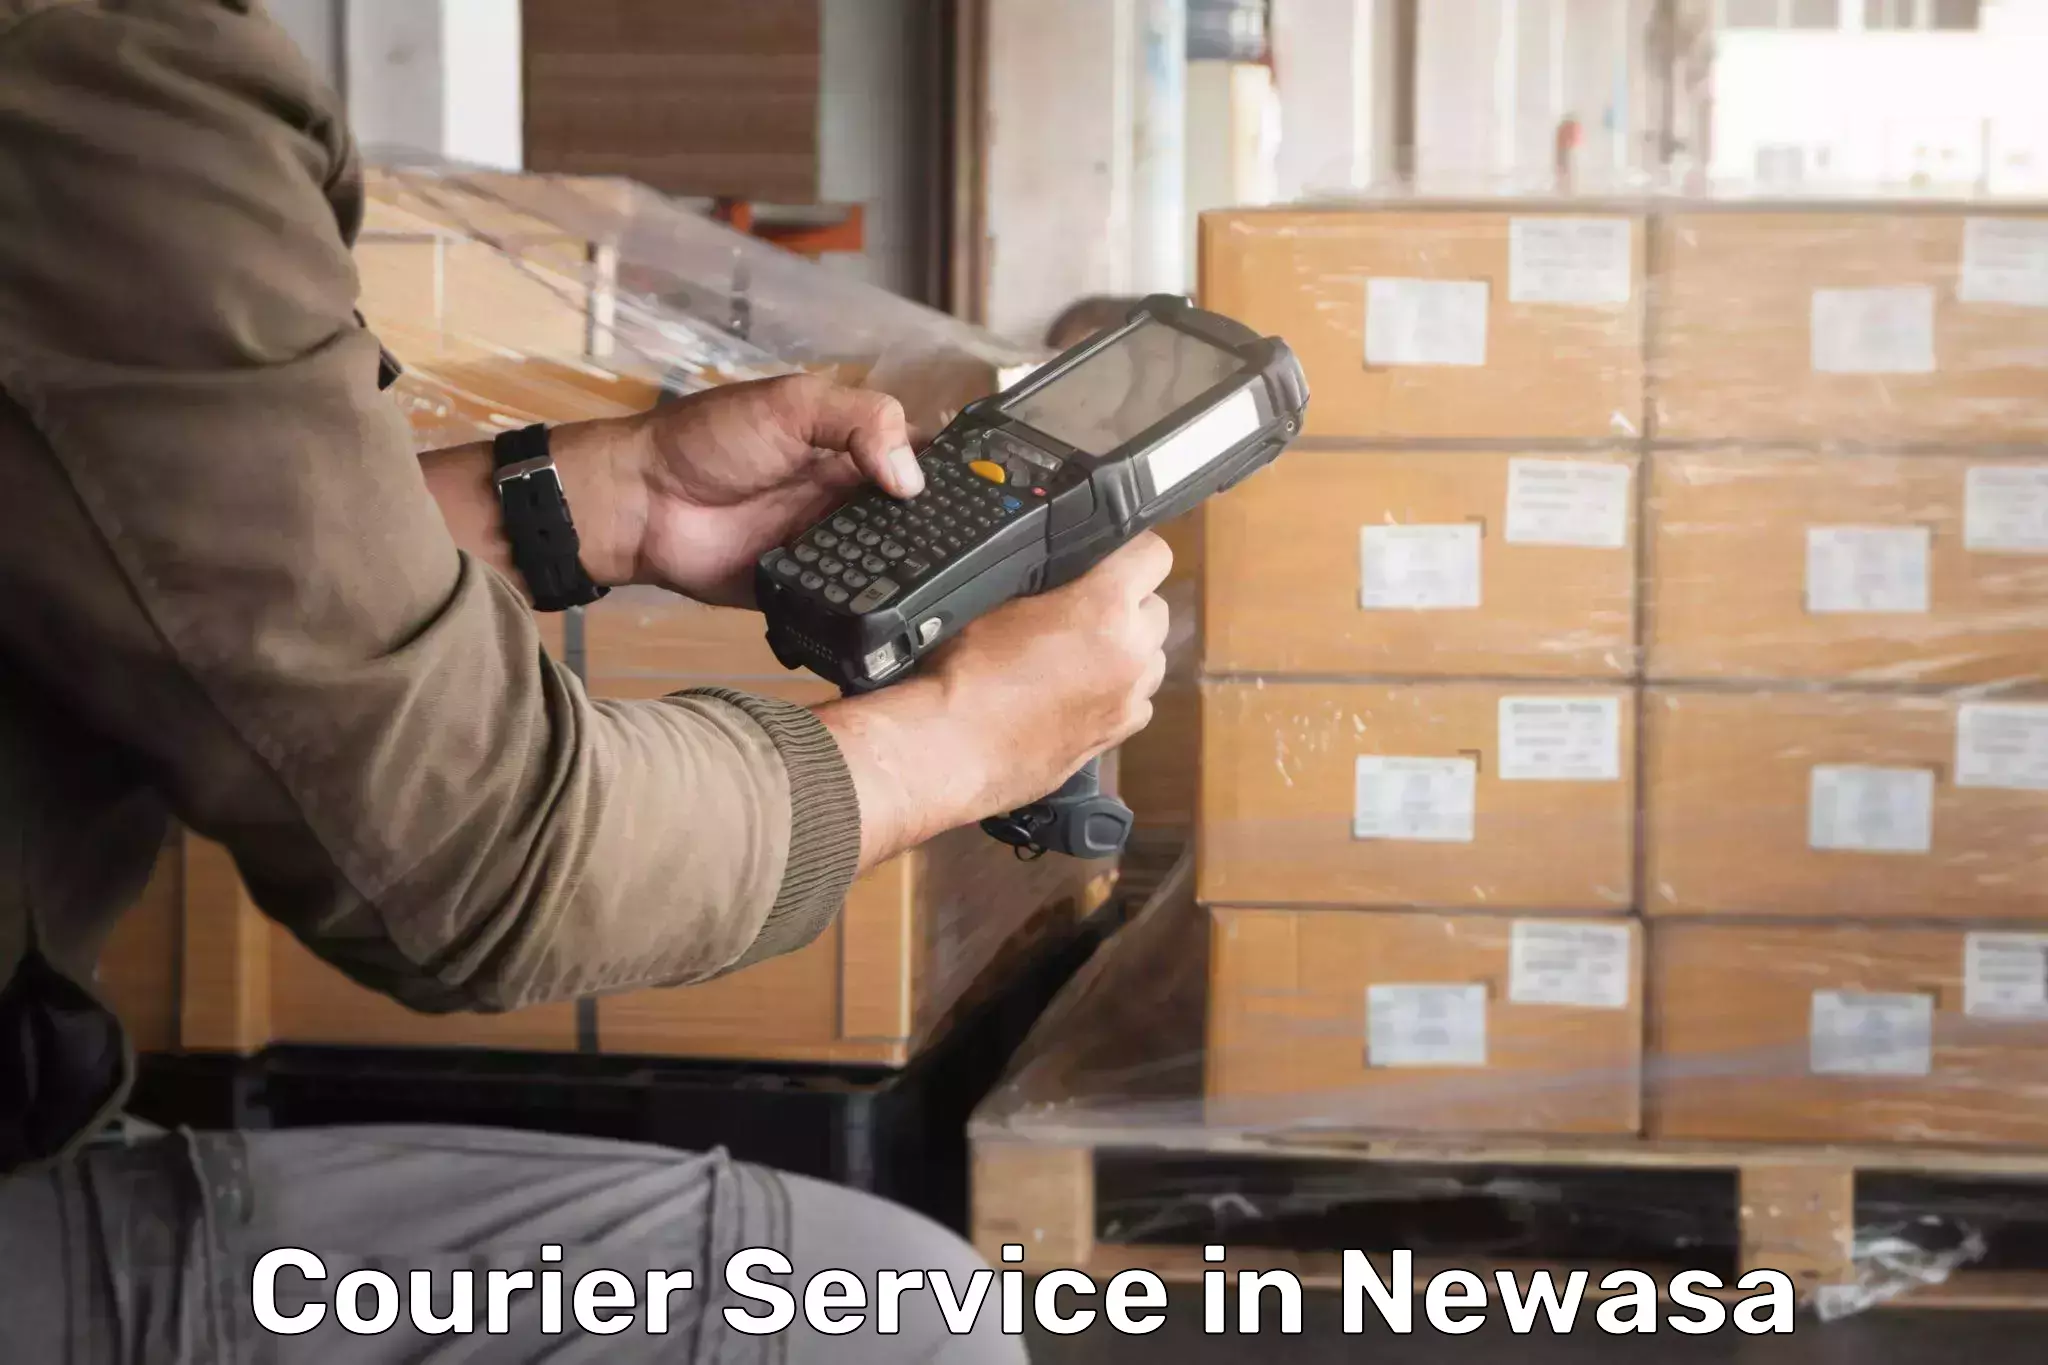 Customer-centric shipping in Newasa